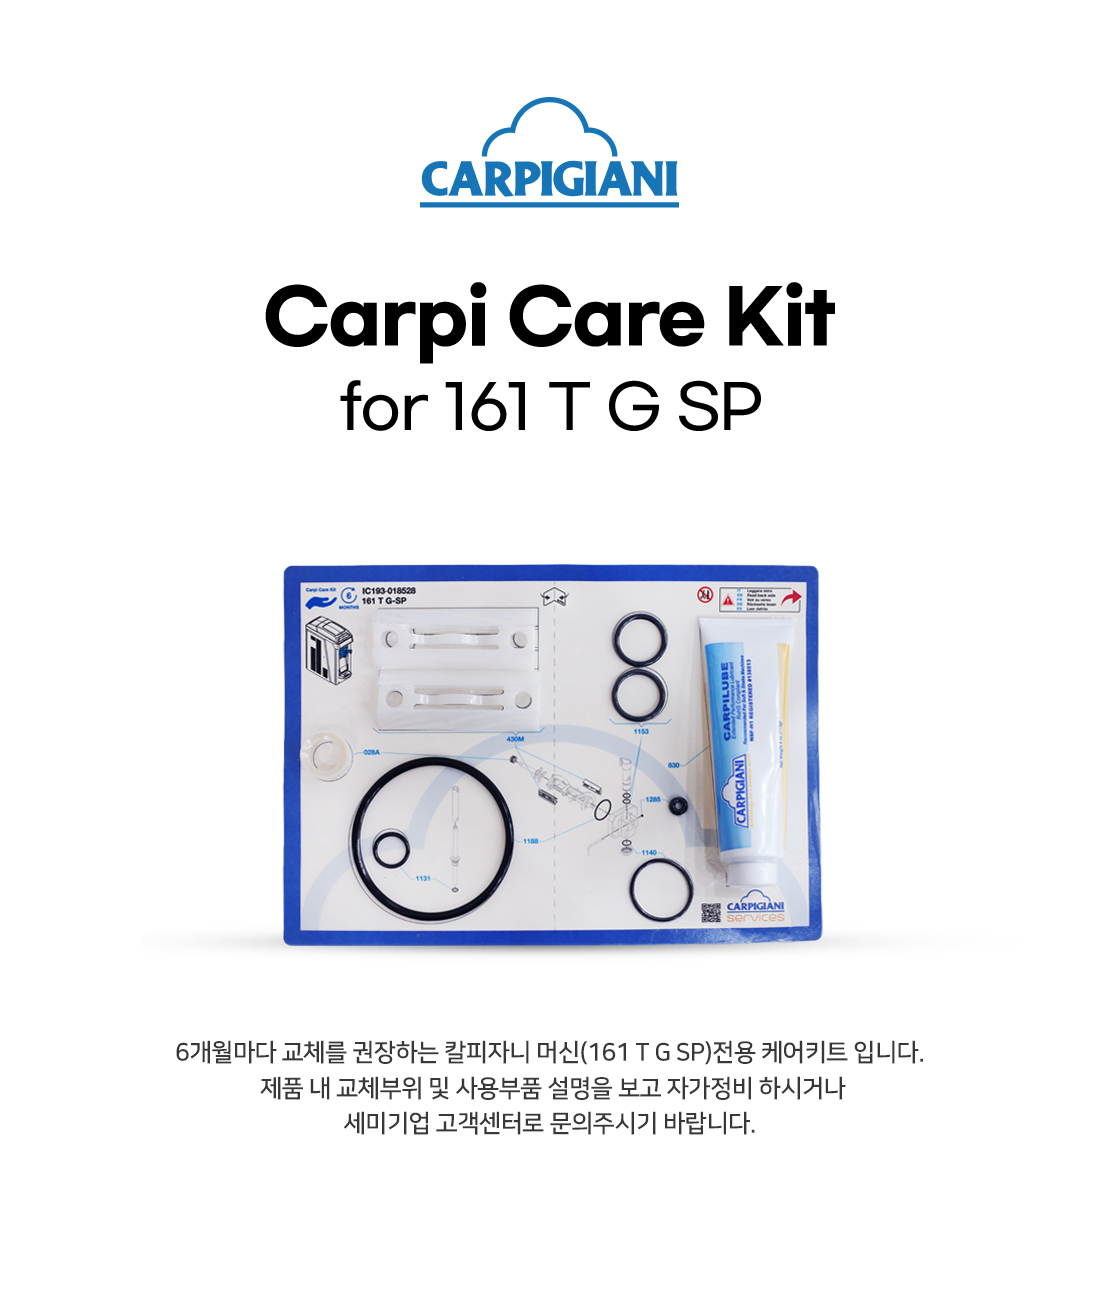 Carpi-Care-Kit(161TGSP)_211207_02_132532.jpg